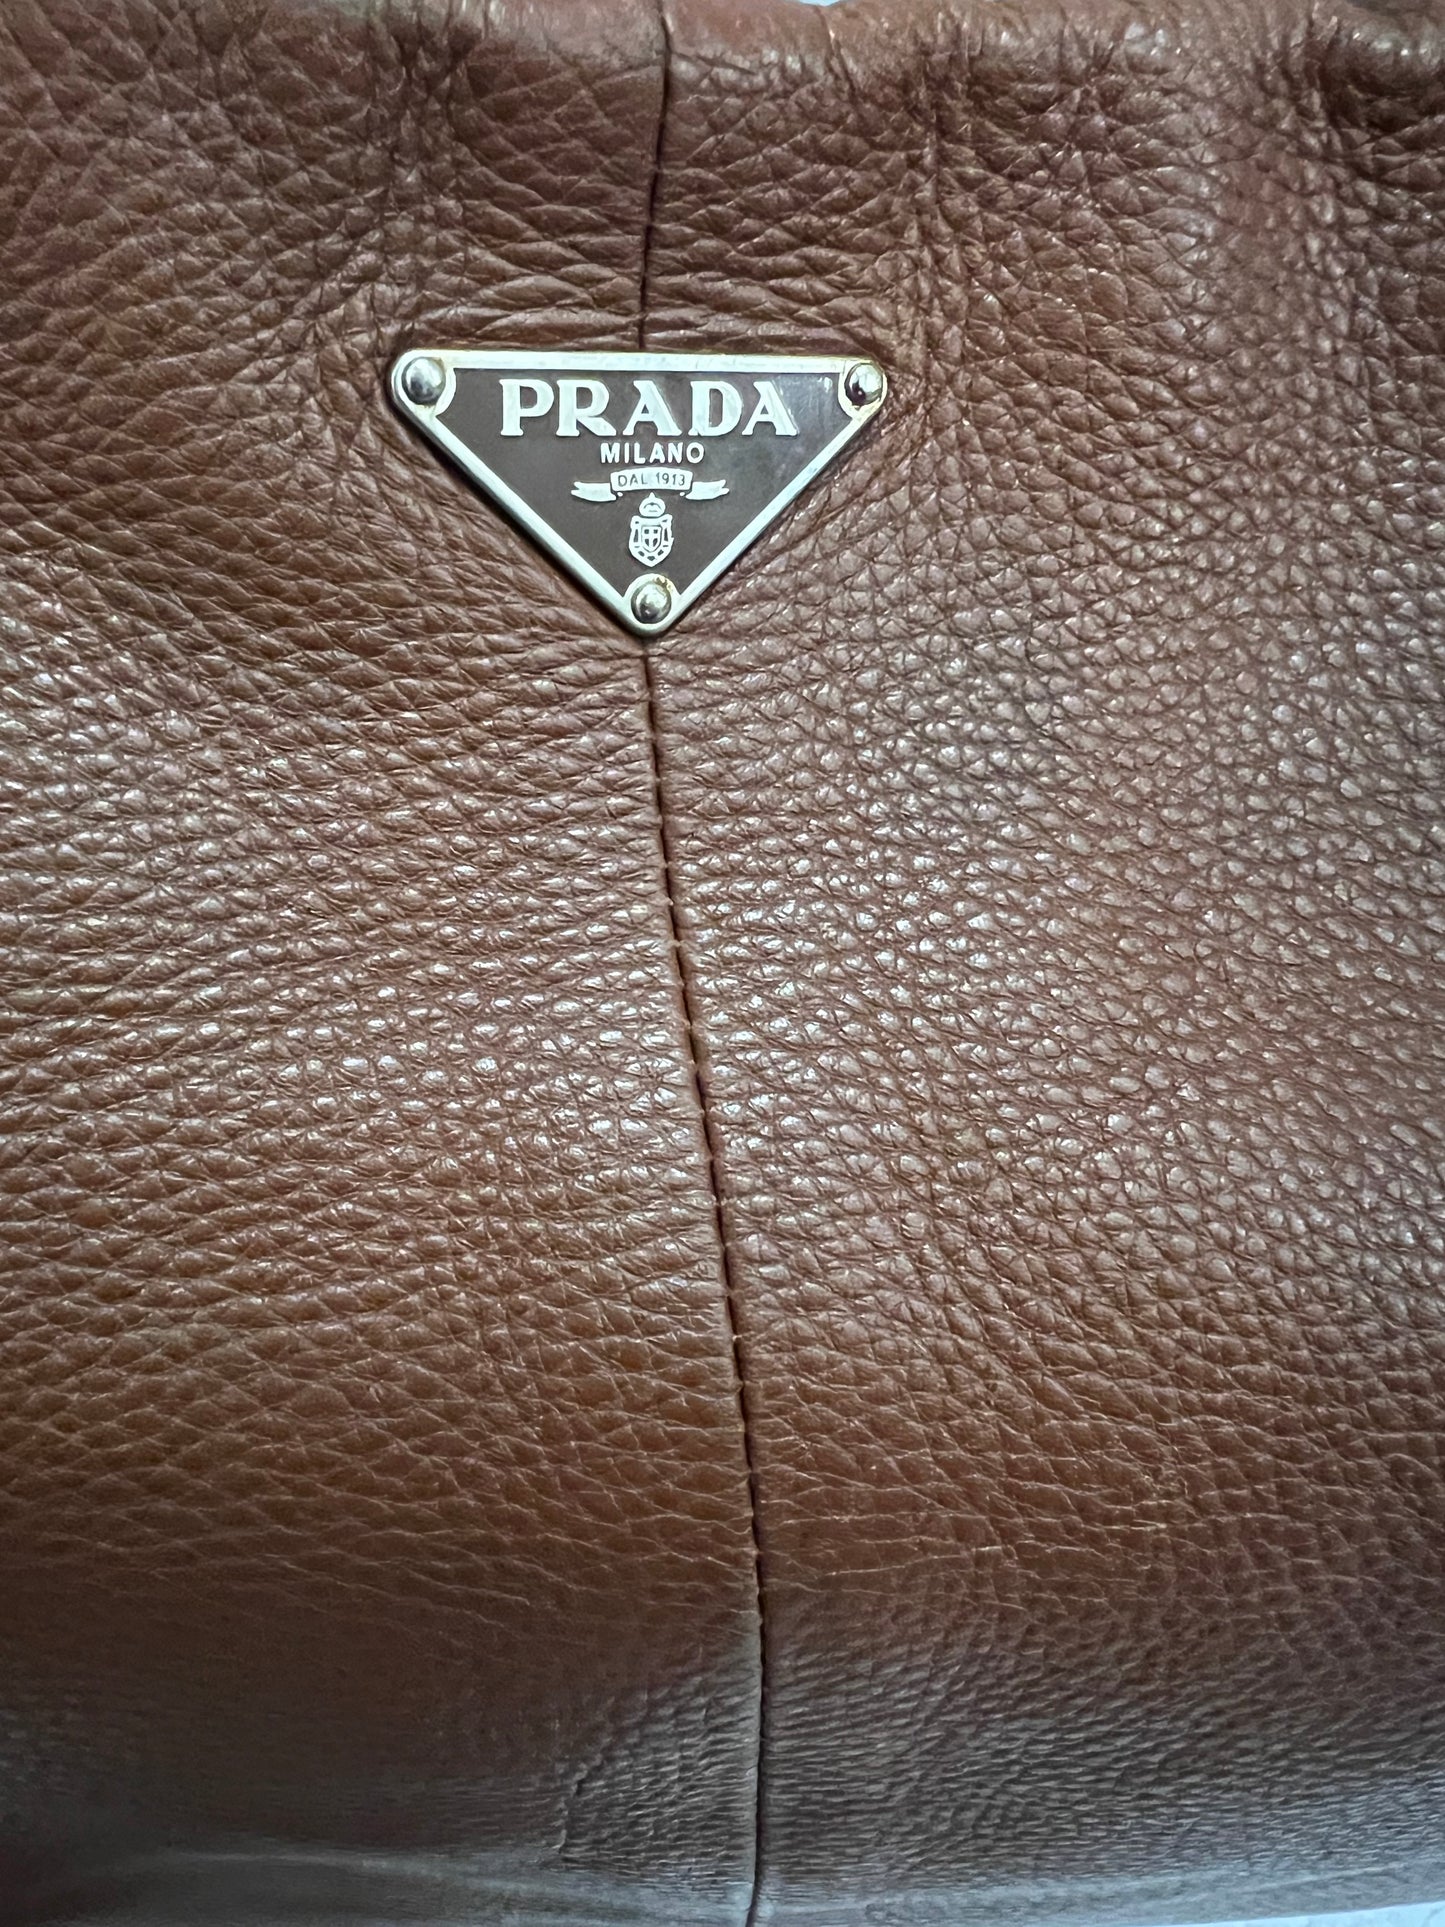 PRADA - SHOPPING BAG